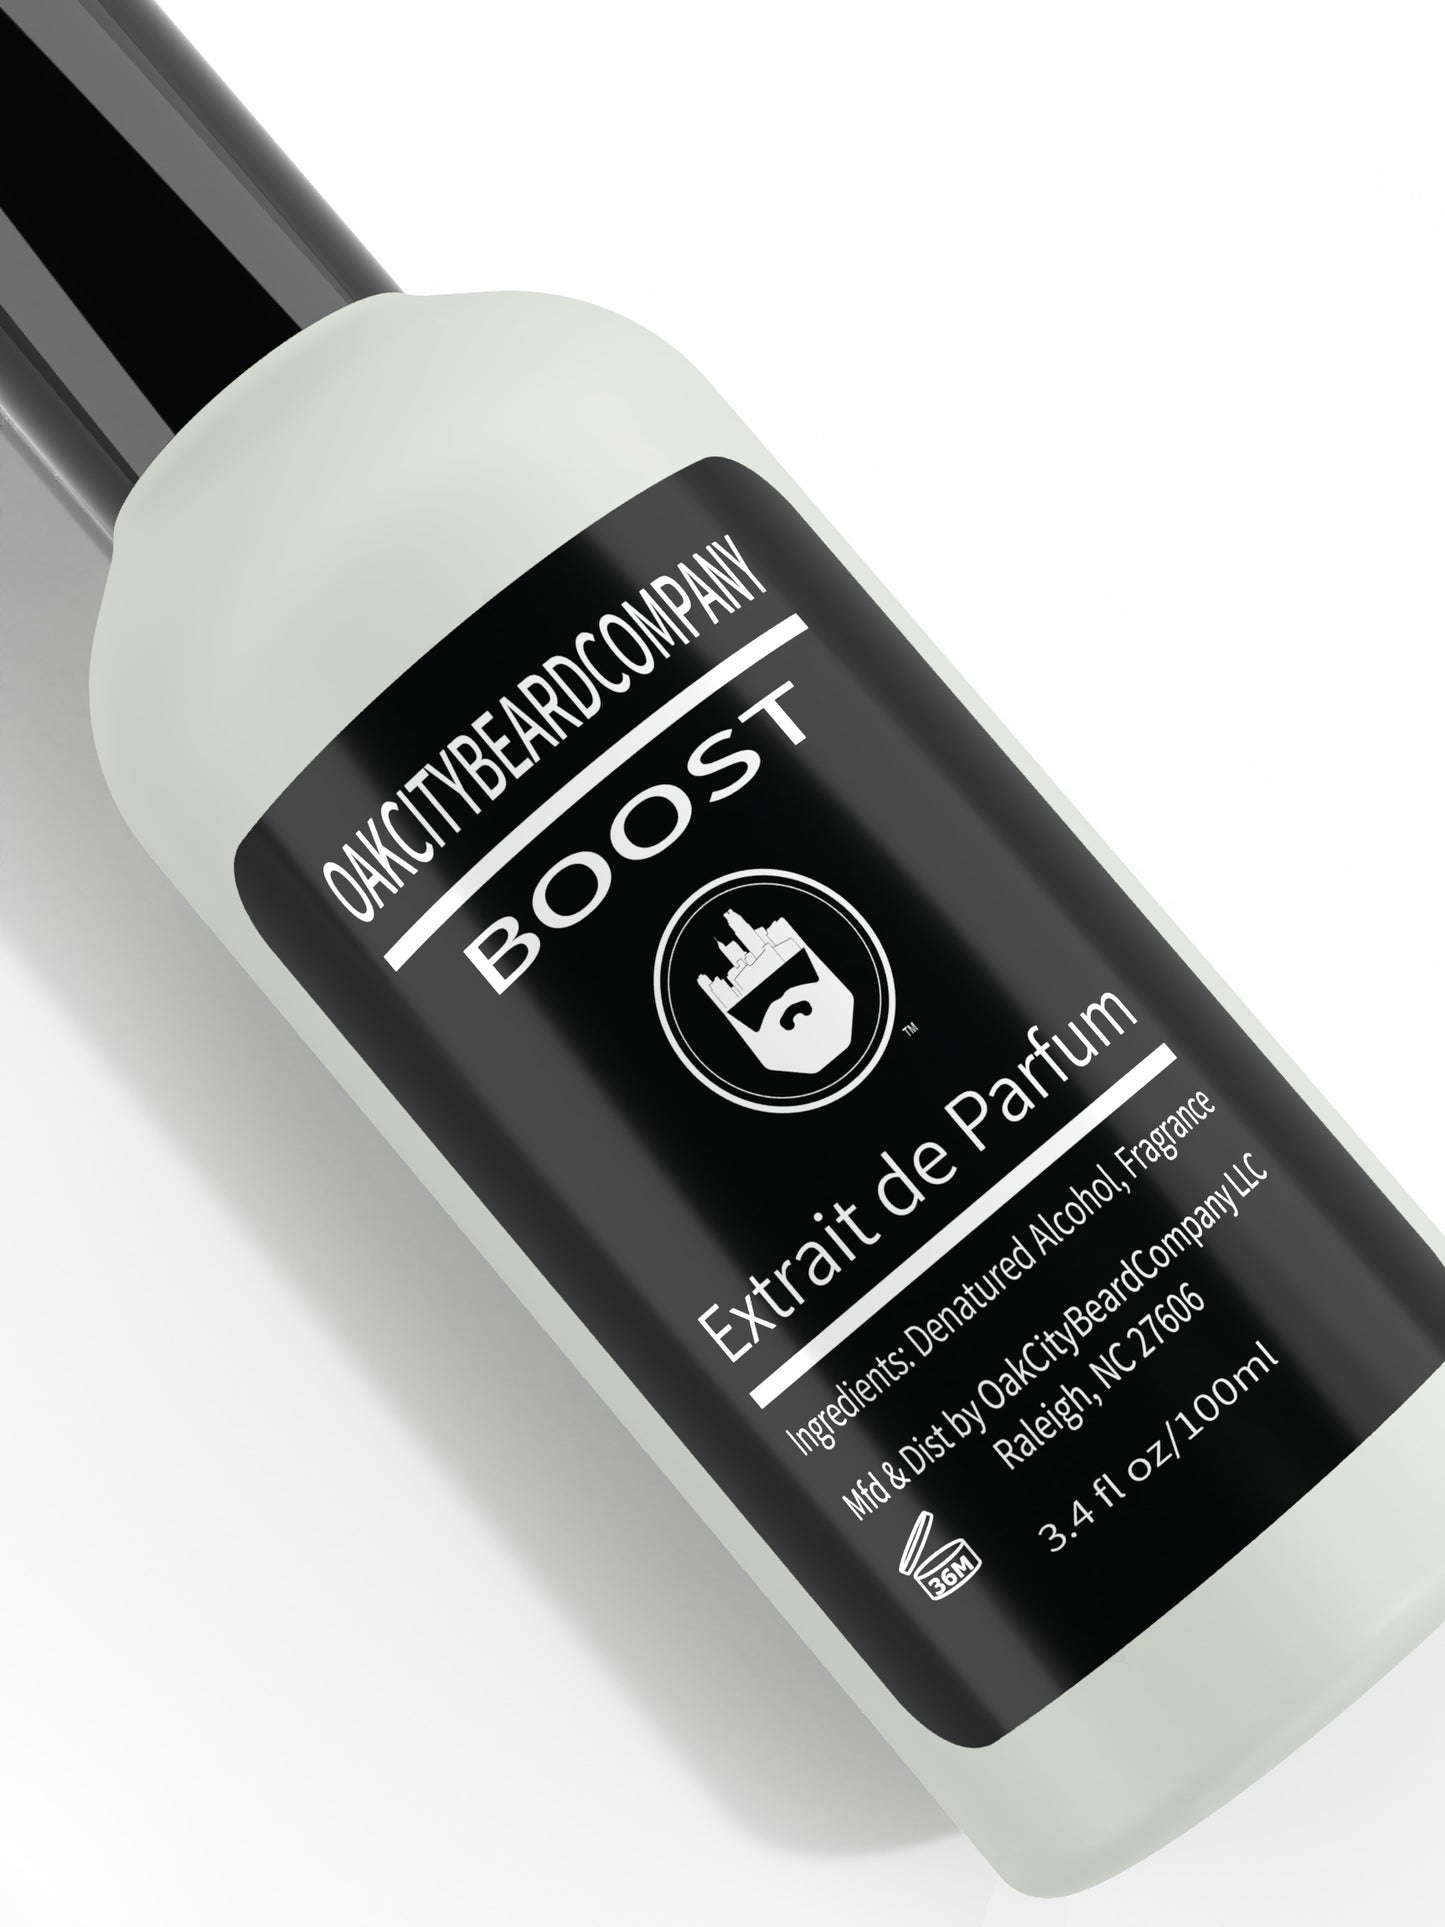 Boost (Cologne) Extrait de Parfum by Oak City Beard Company